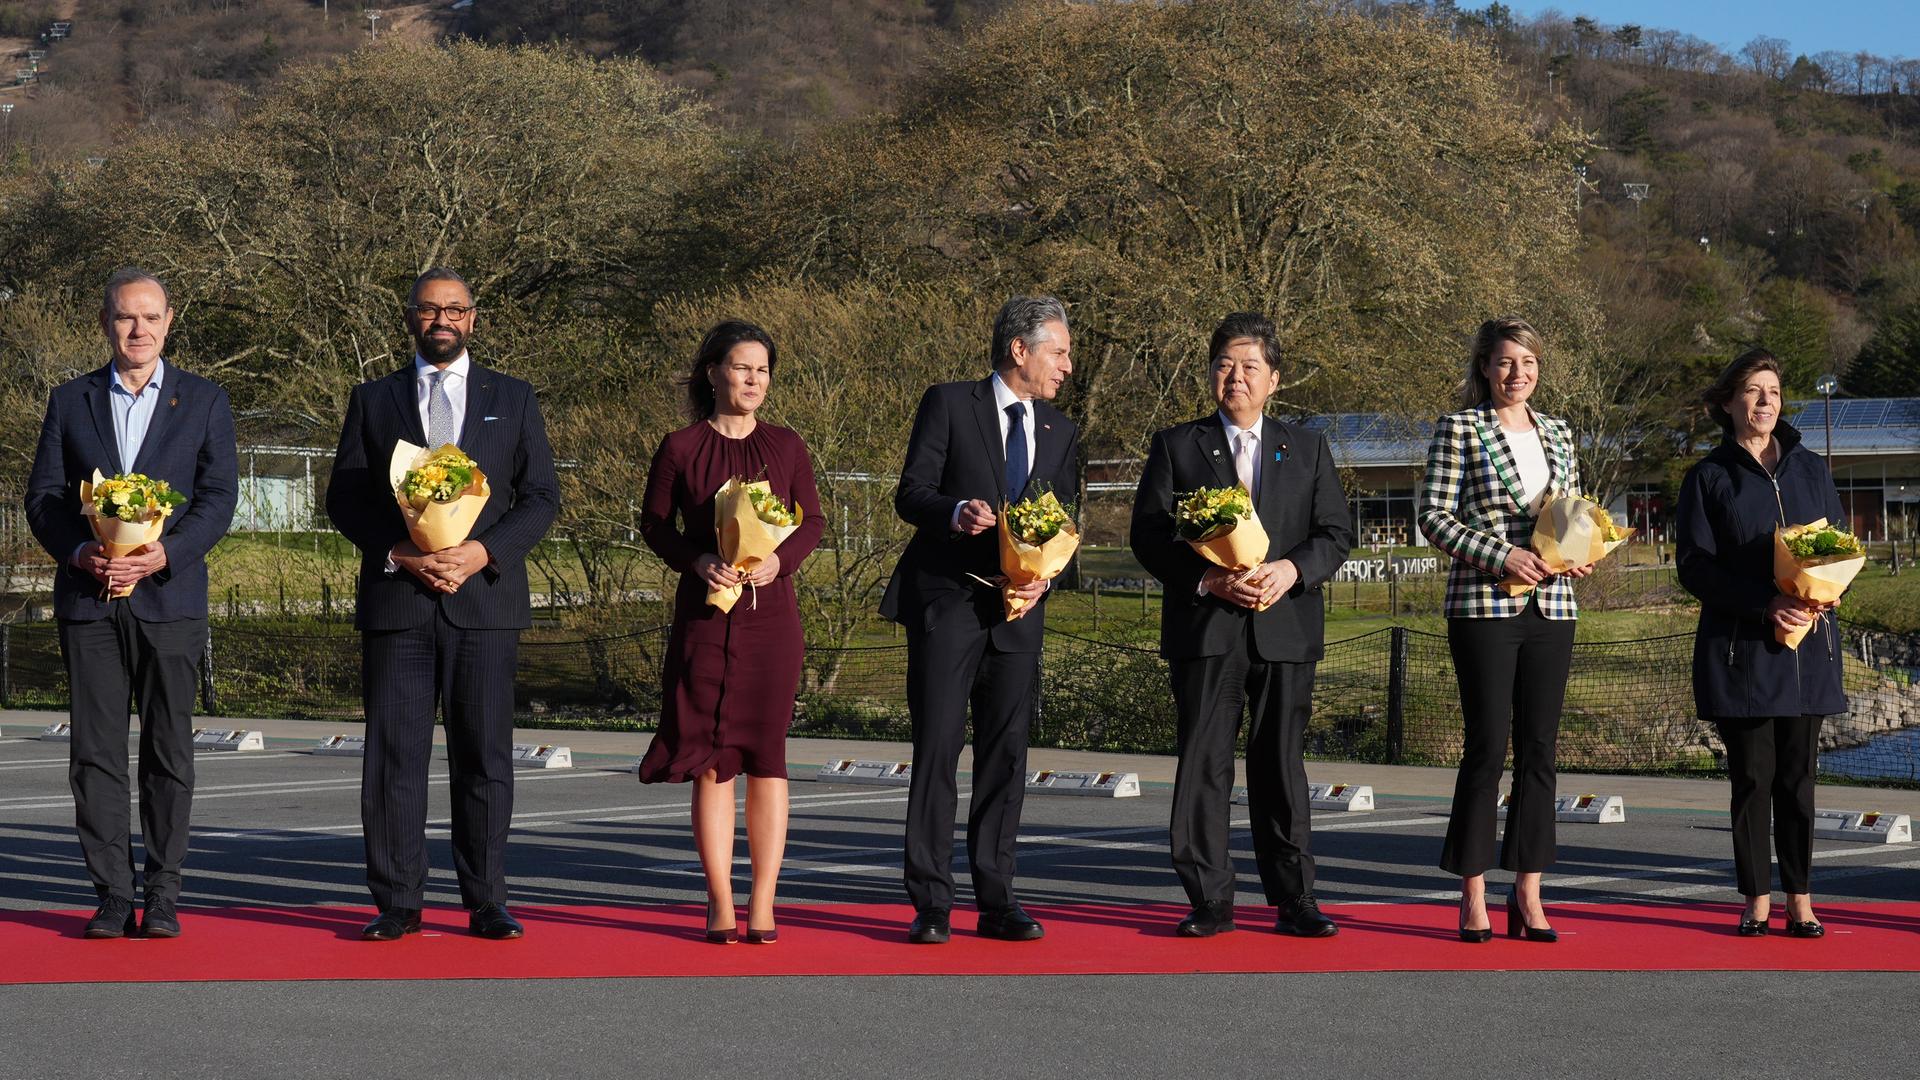 Japan, Karuizawa: Bundesaußenministerin Baerbock steht zwischen Ihren Kollegen von Italien, Großbritannien, den USA, Japan, Kanada und Frankreich beim Abschlusstreffen der G7-Staaten. Alle halten einen Blumenstrauß in der Hand.